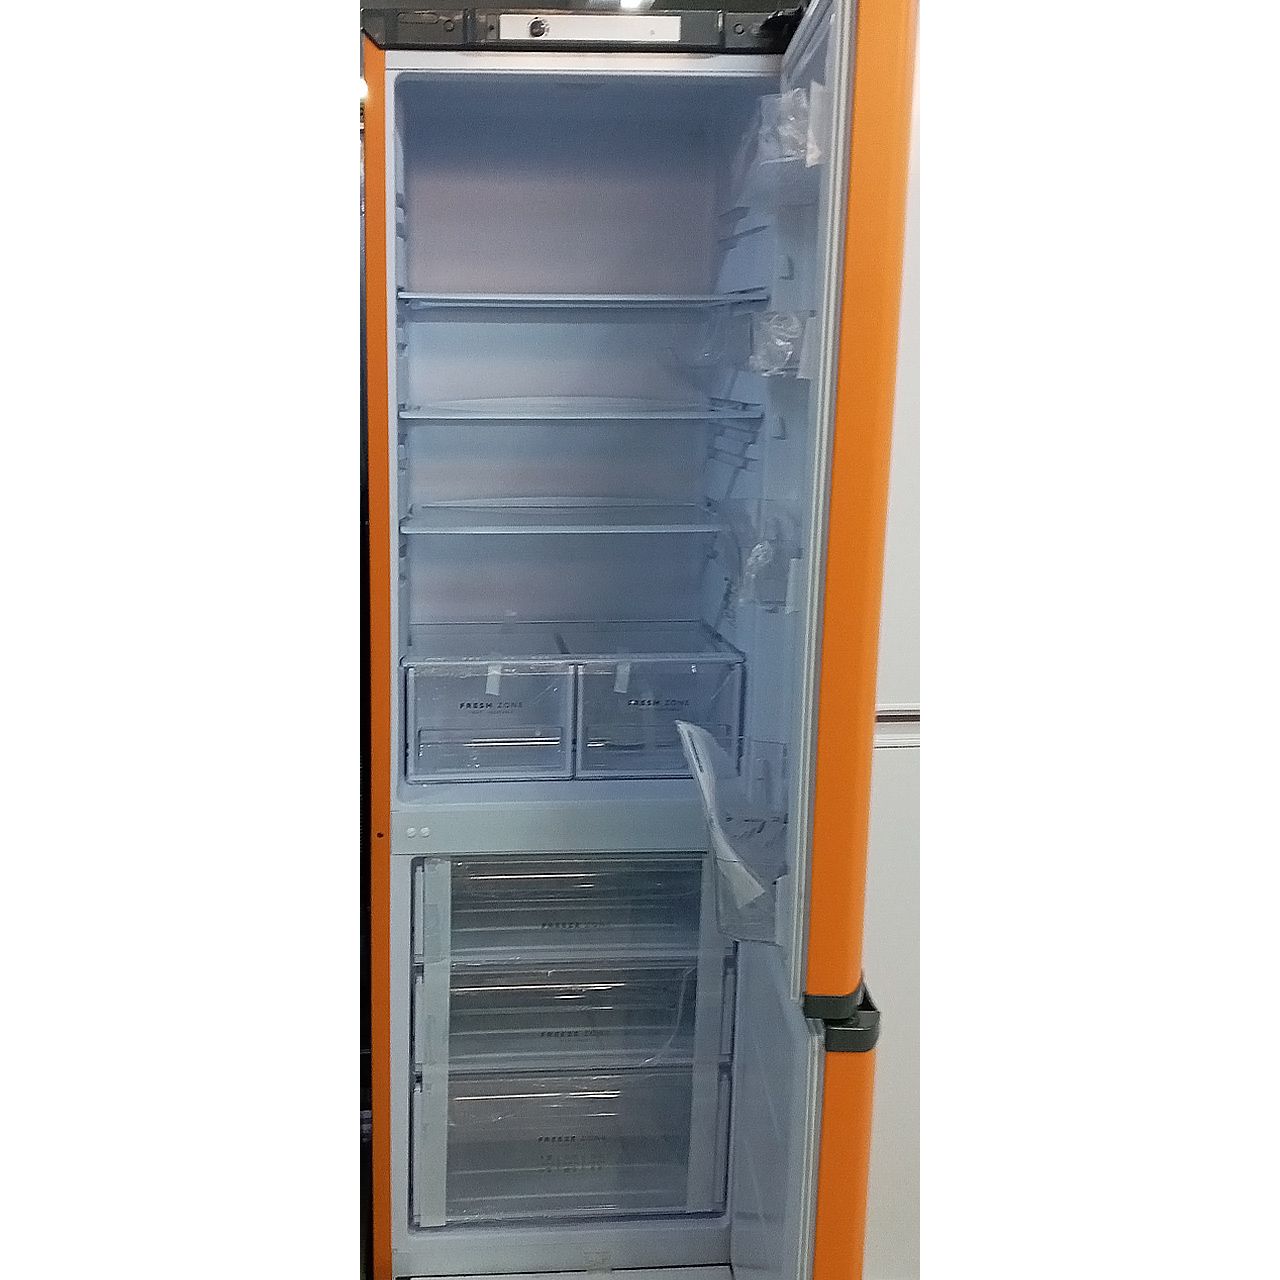 Холодильник двухкамерный Бирюса на 295 литров